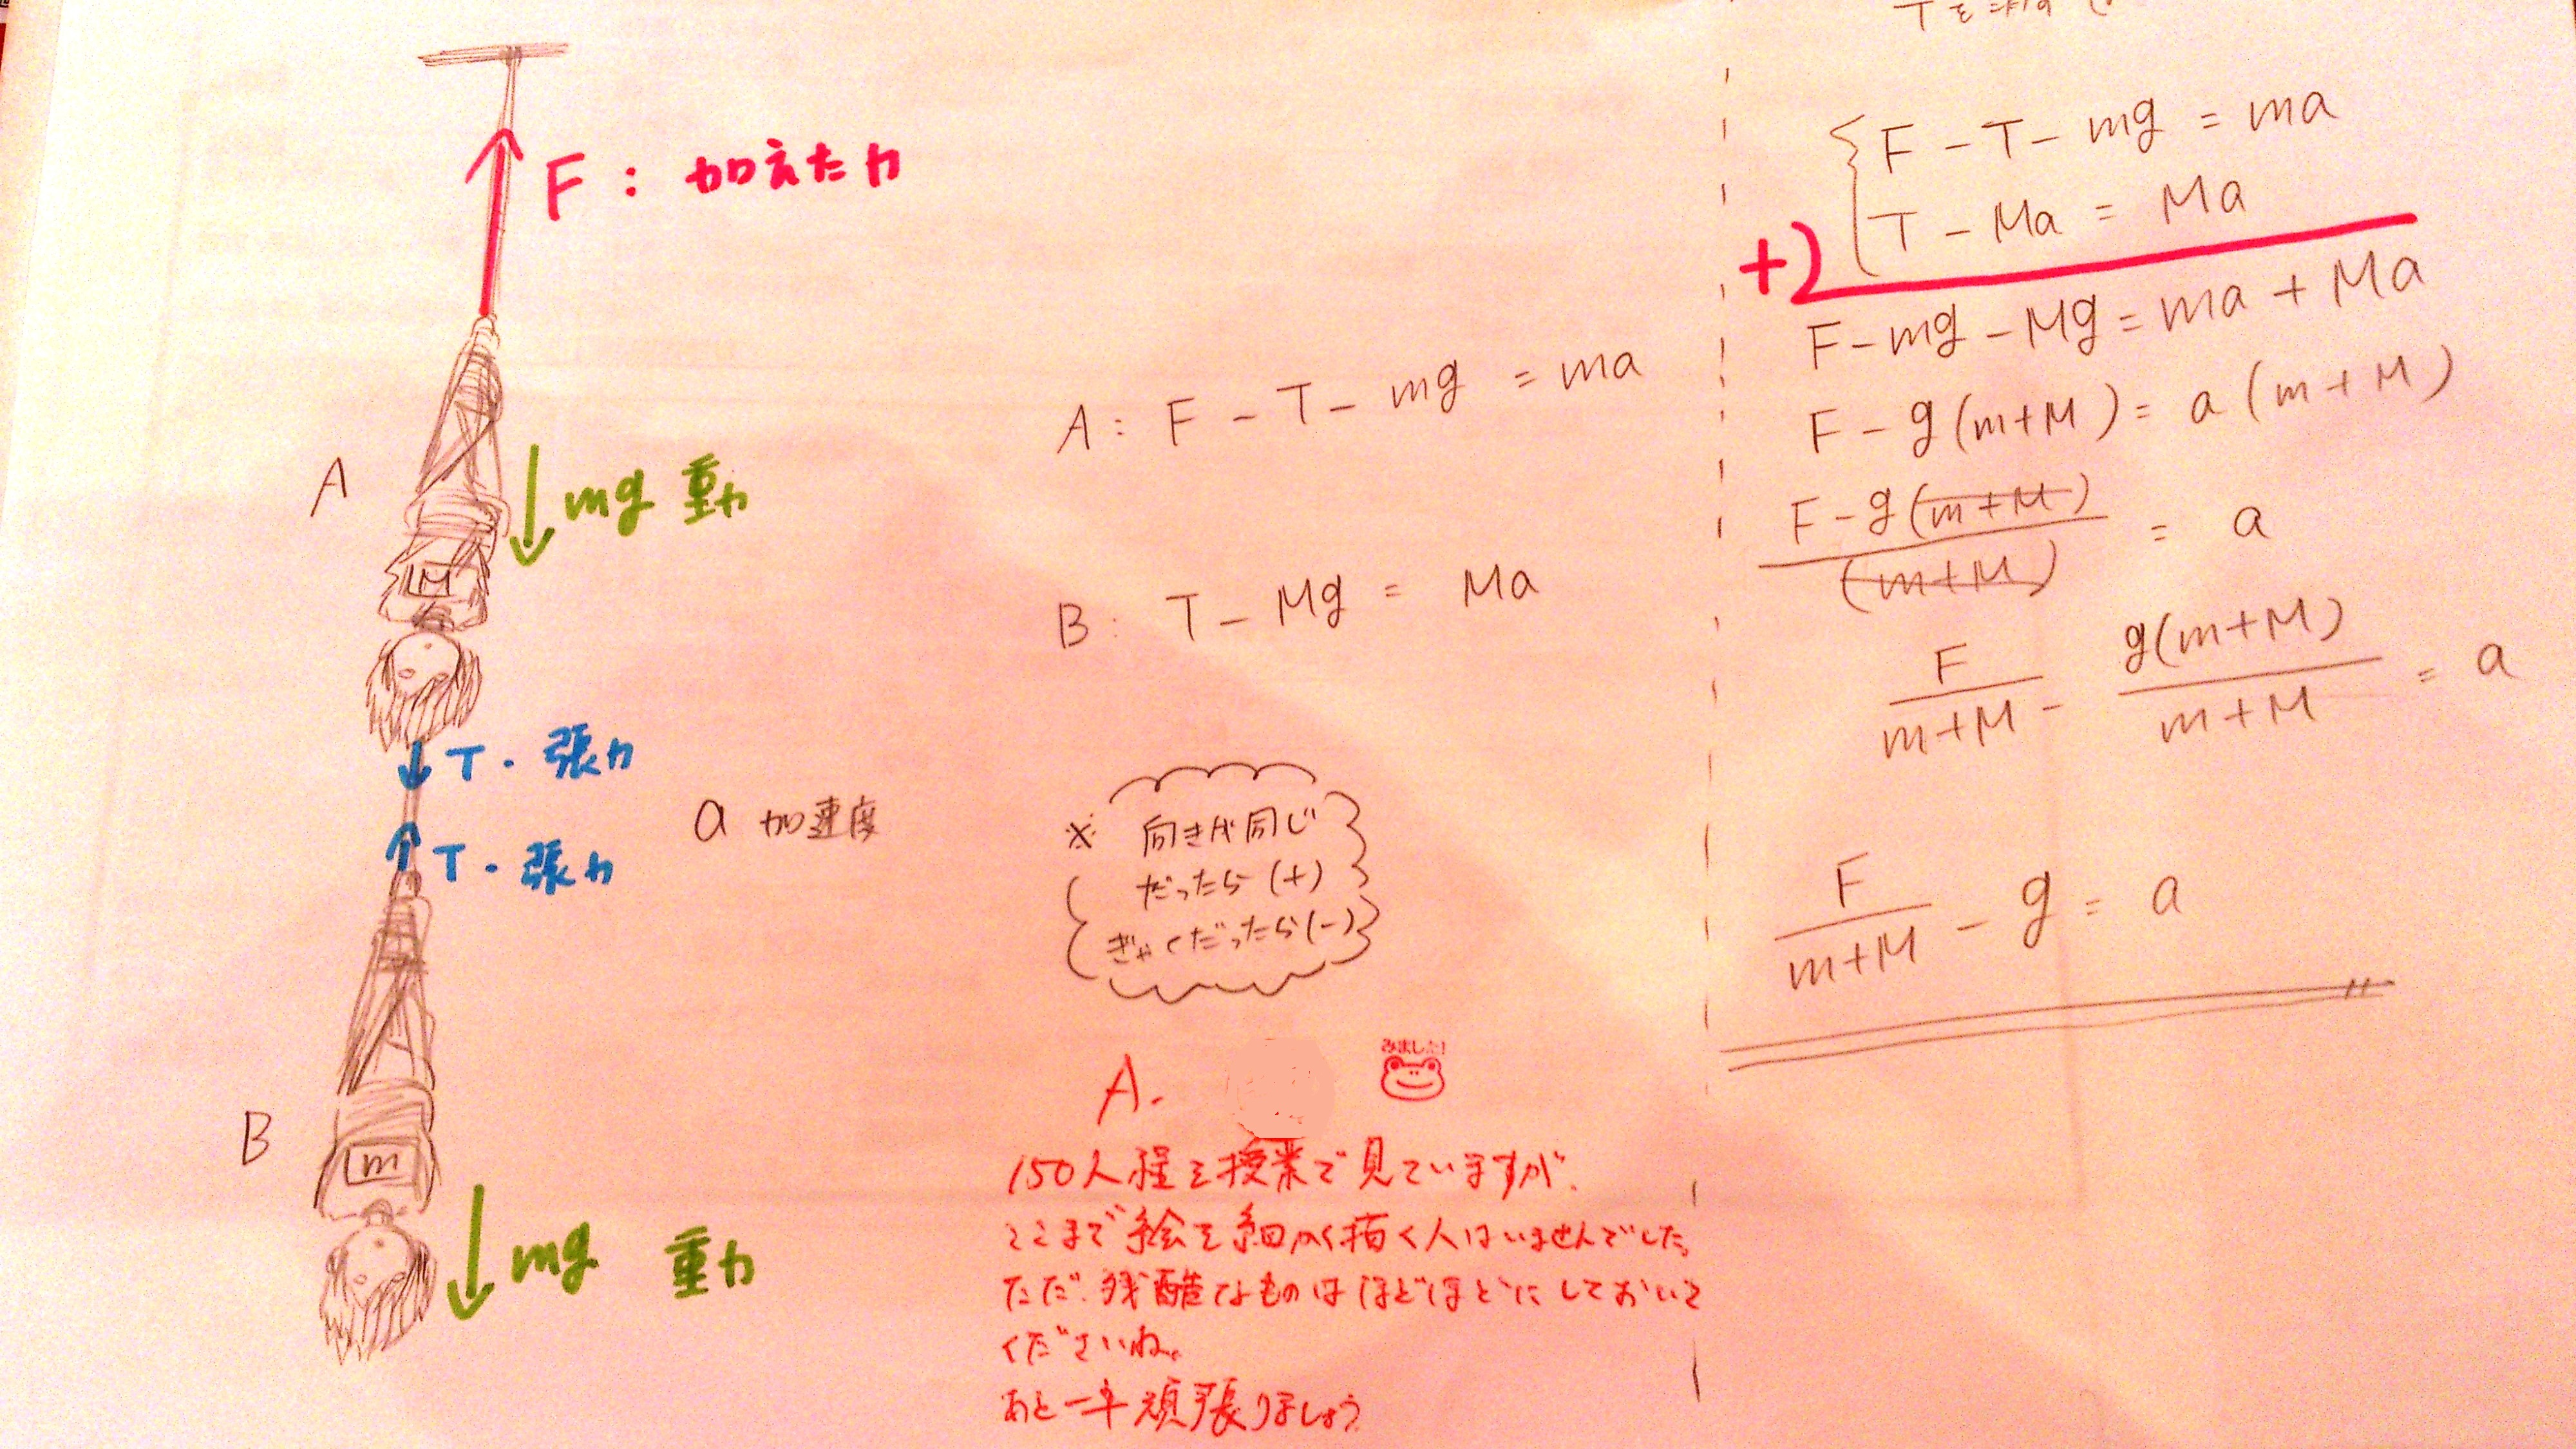 高校生の可愛い落書きを見つけました Tca Blog Tca 東京コミュニケーションアート